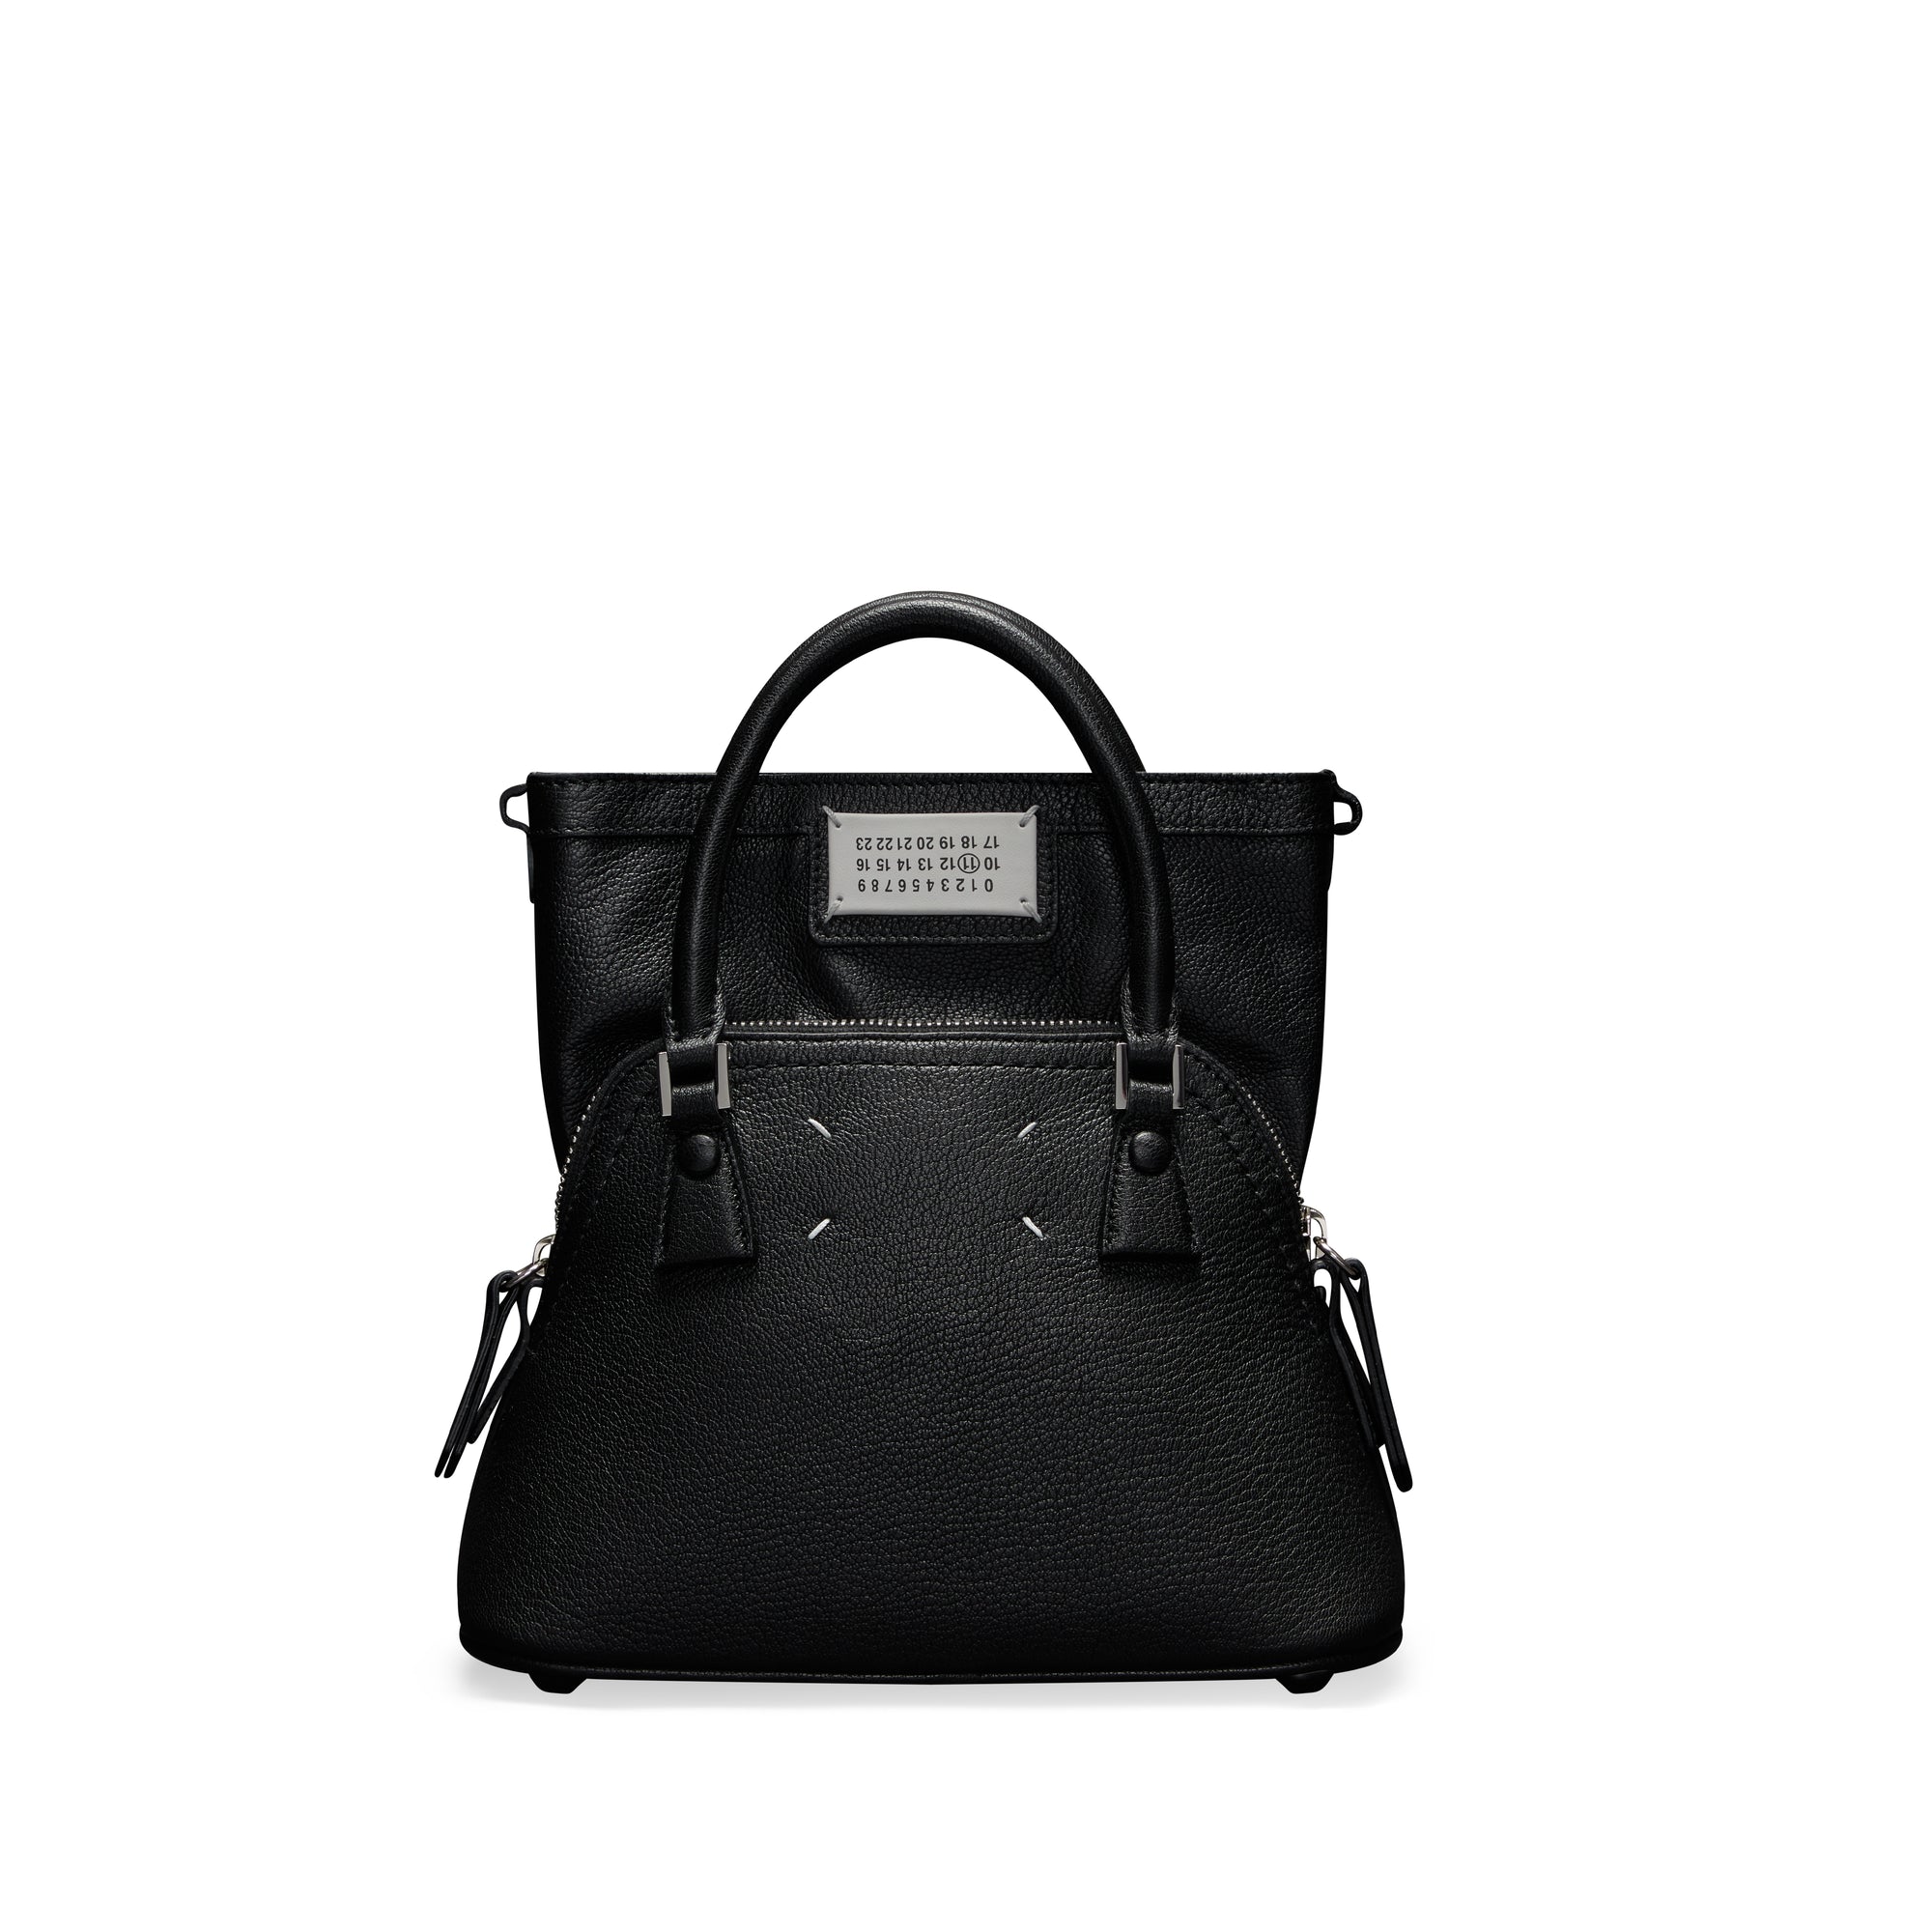 Maison Margiela - Women’s 5AC Classique Micro Bag - (Black) view 1